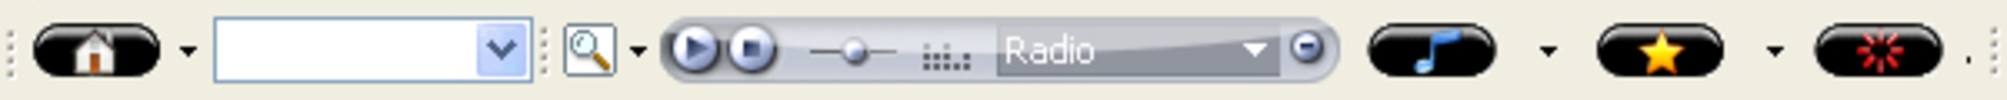 Jazz Radio Toolbar screenshot 2